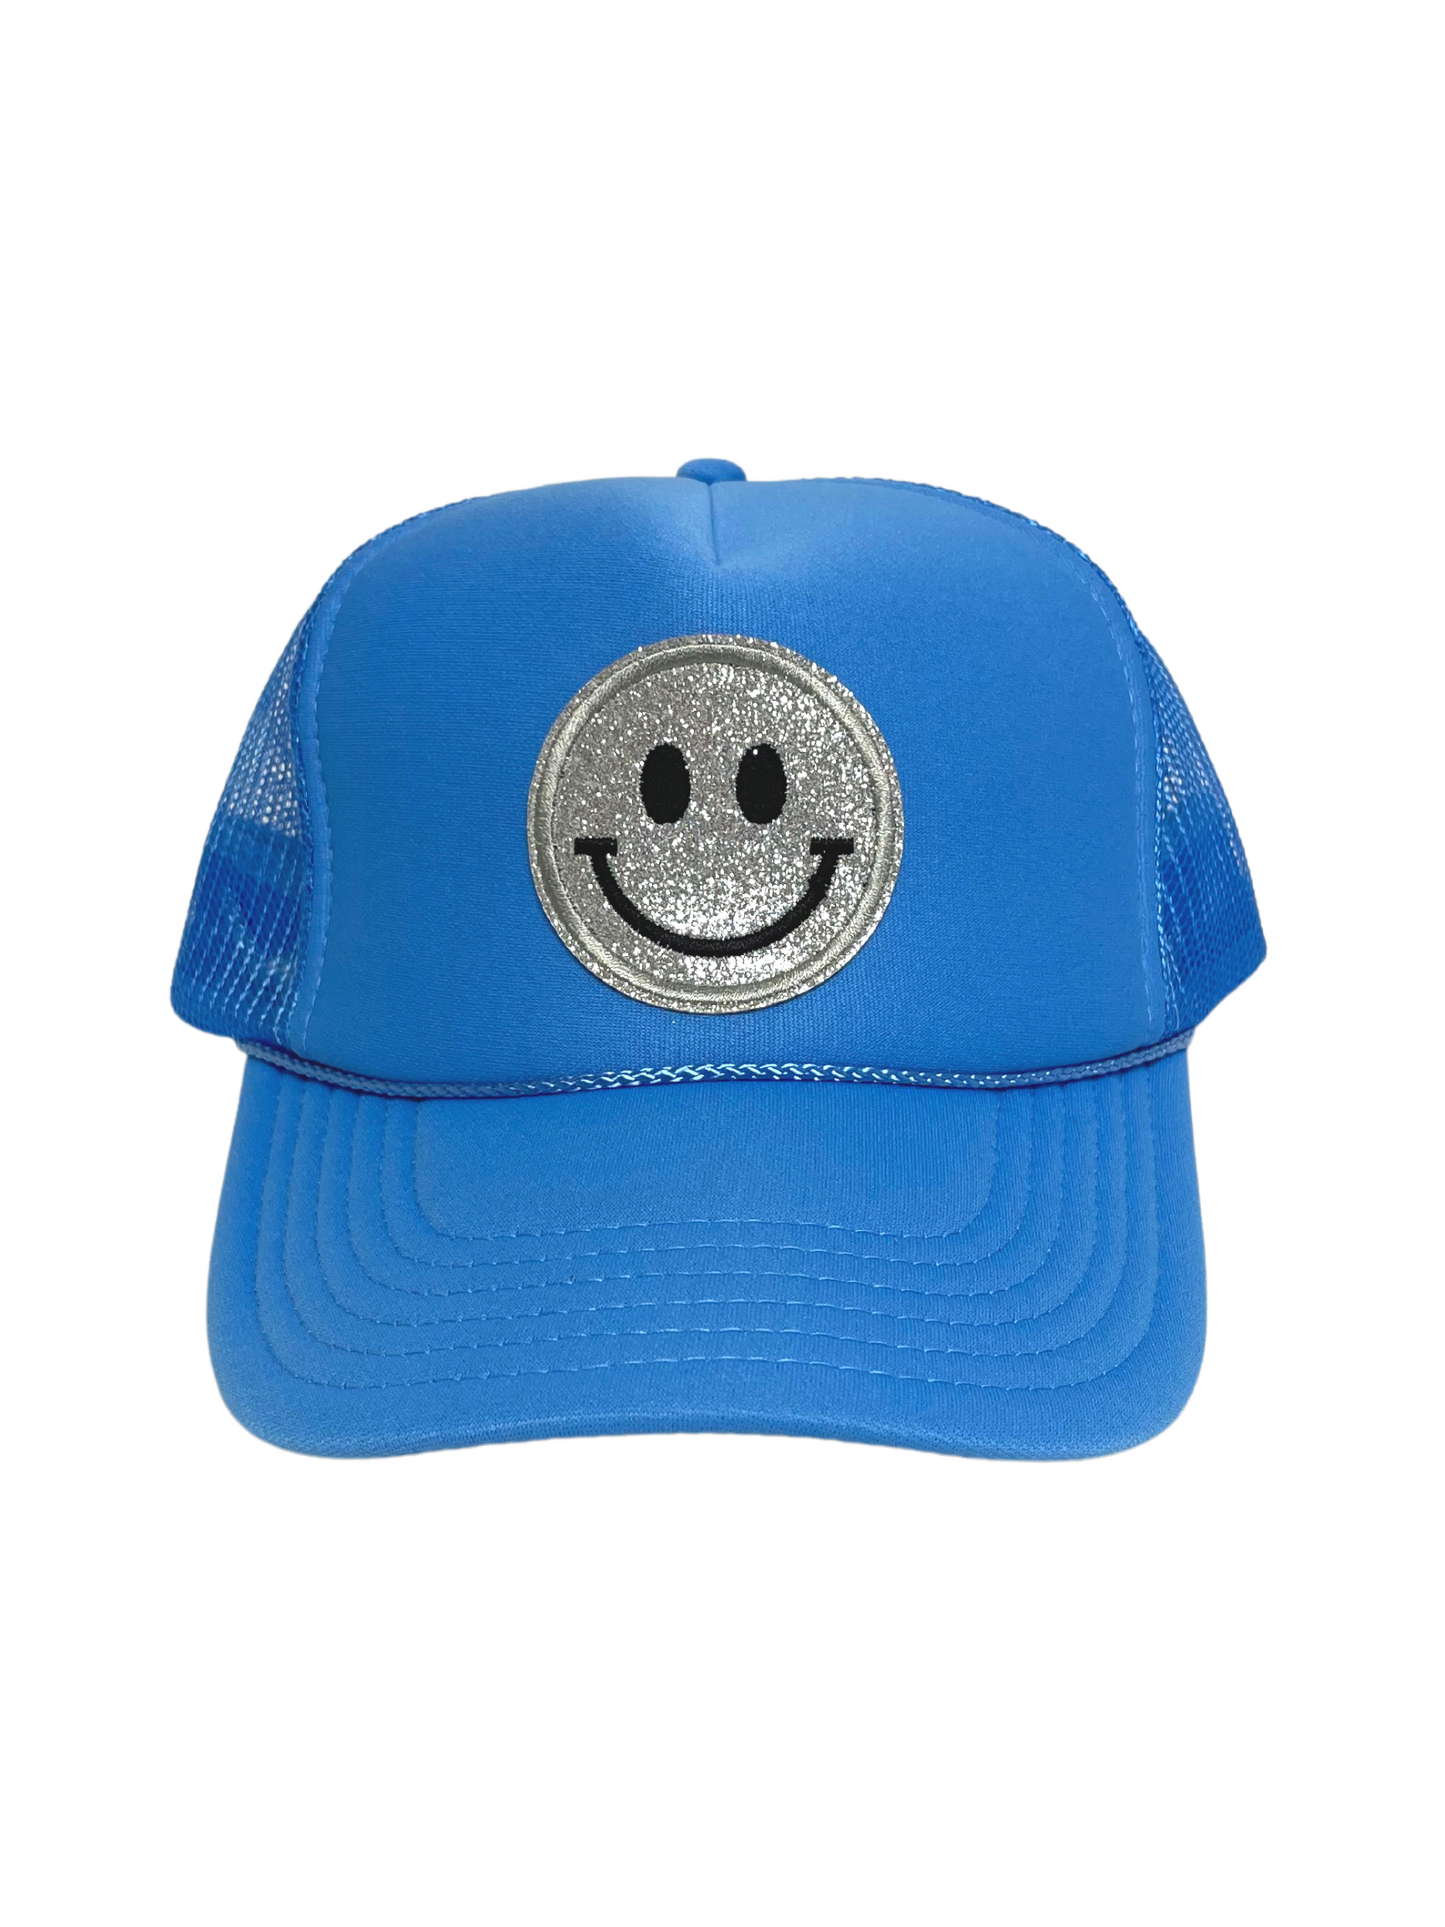 Smiley Trucker Hat